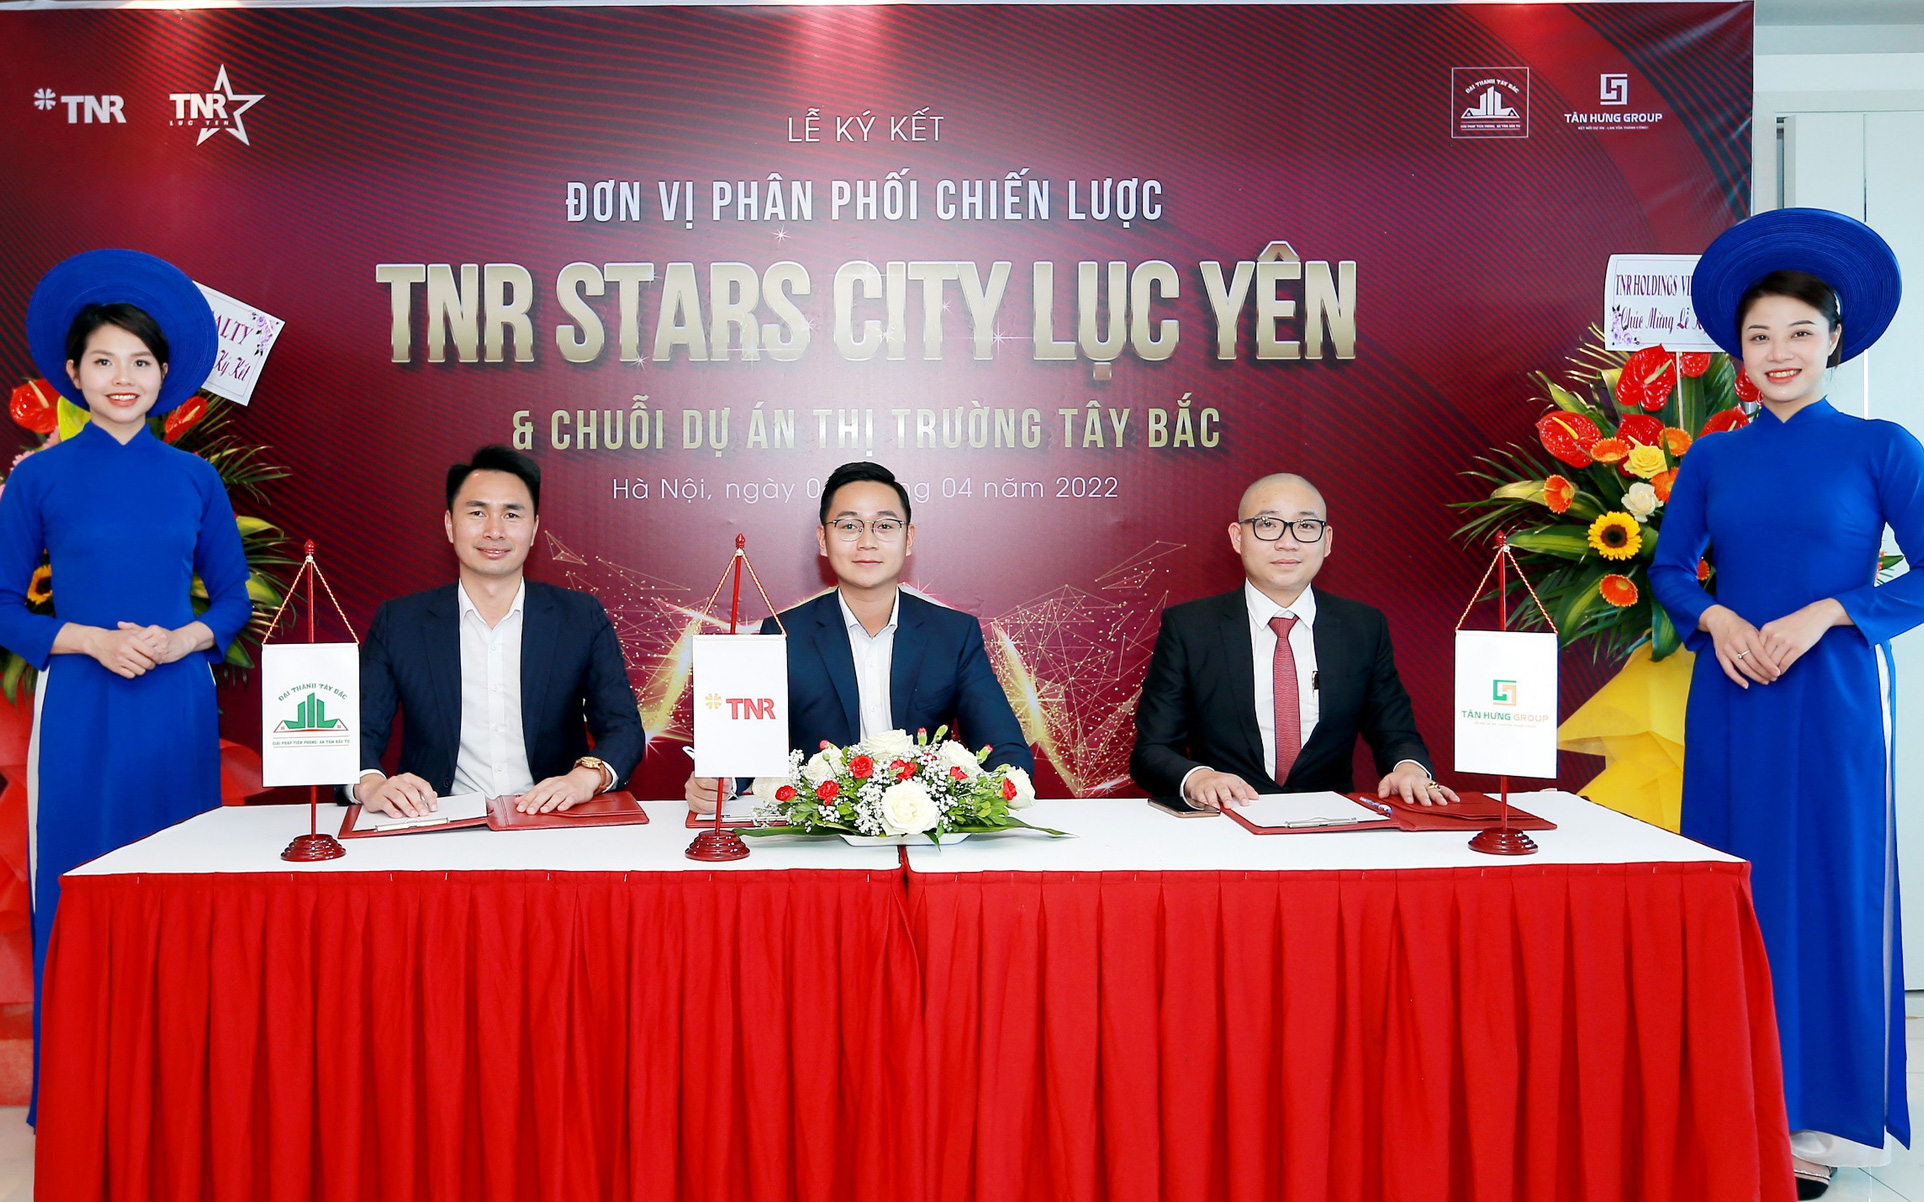 Lễ ký kết nhà phân phối chiến lược dự án TNR Stars City Lục Yên